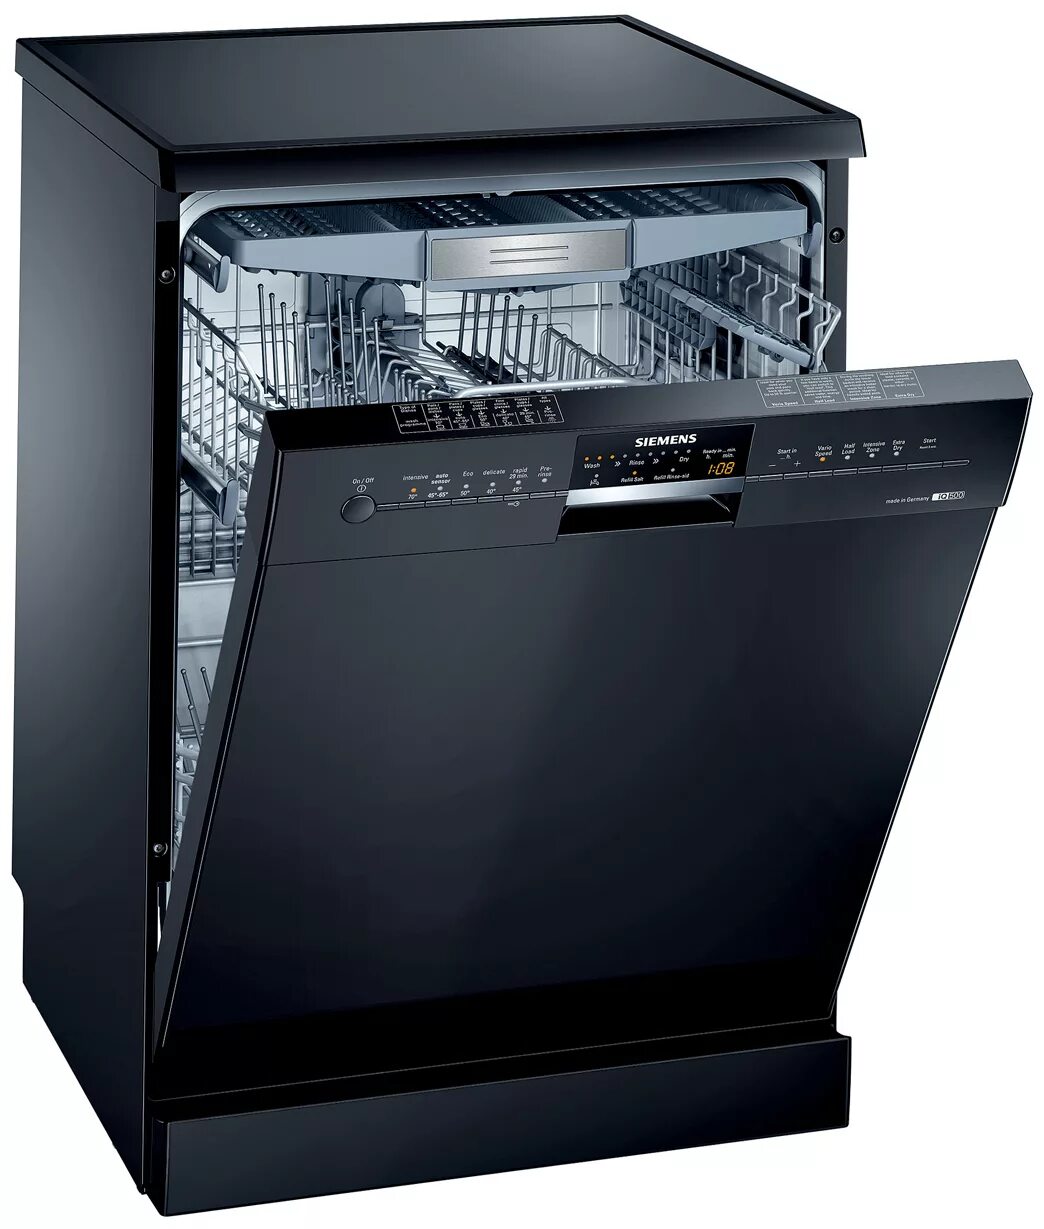 Посудомоечная машина купить в беларуси. Посудомоечная машина Siemens SN 25m888. Siemens 500 посудомоечная машина. Siemens посудомоечная машина sn44d201sk/34. Посудомойка Борк встраиваемая.